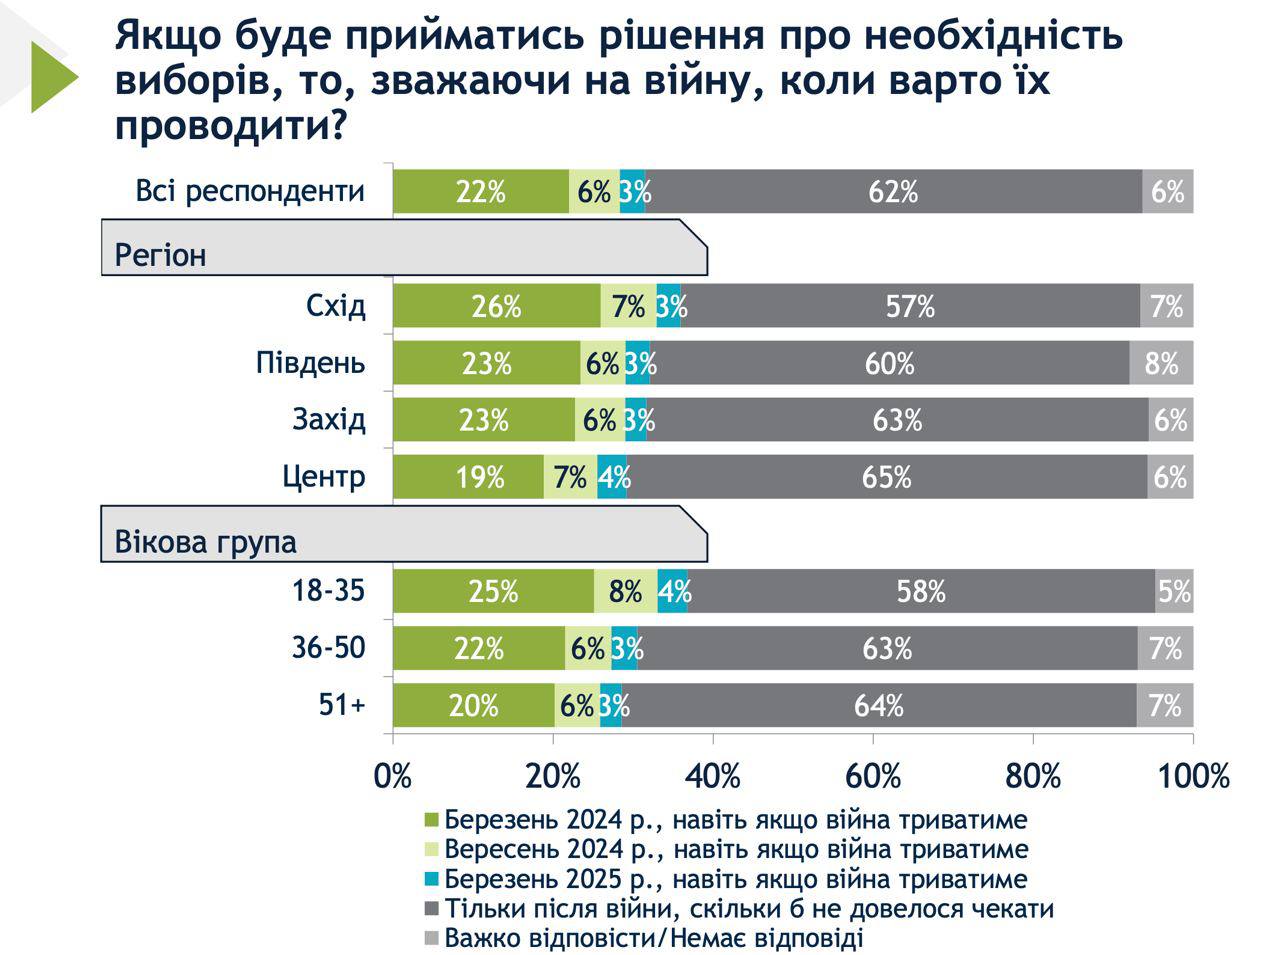 Більшість опитаних українців виступили проти проведення виборів в Україні до завершення війни